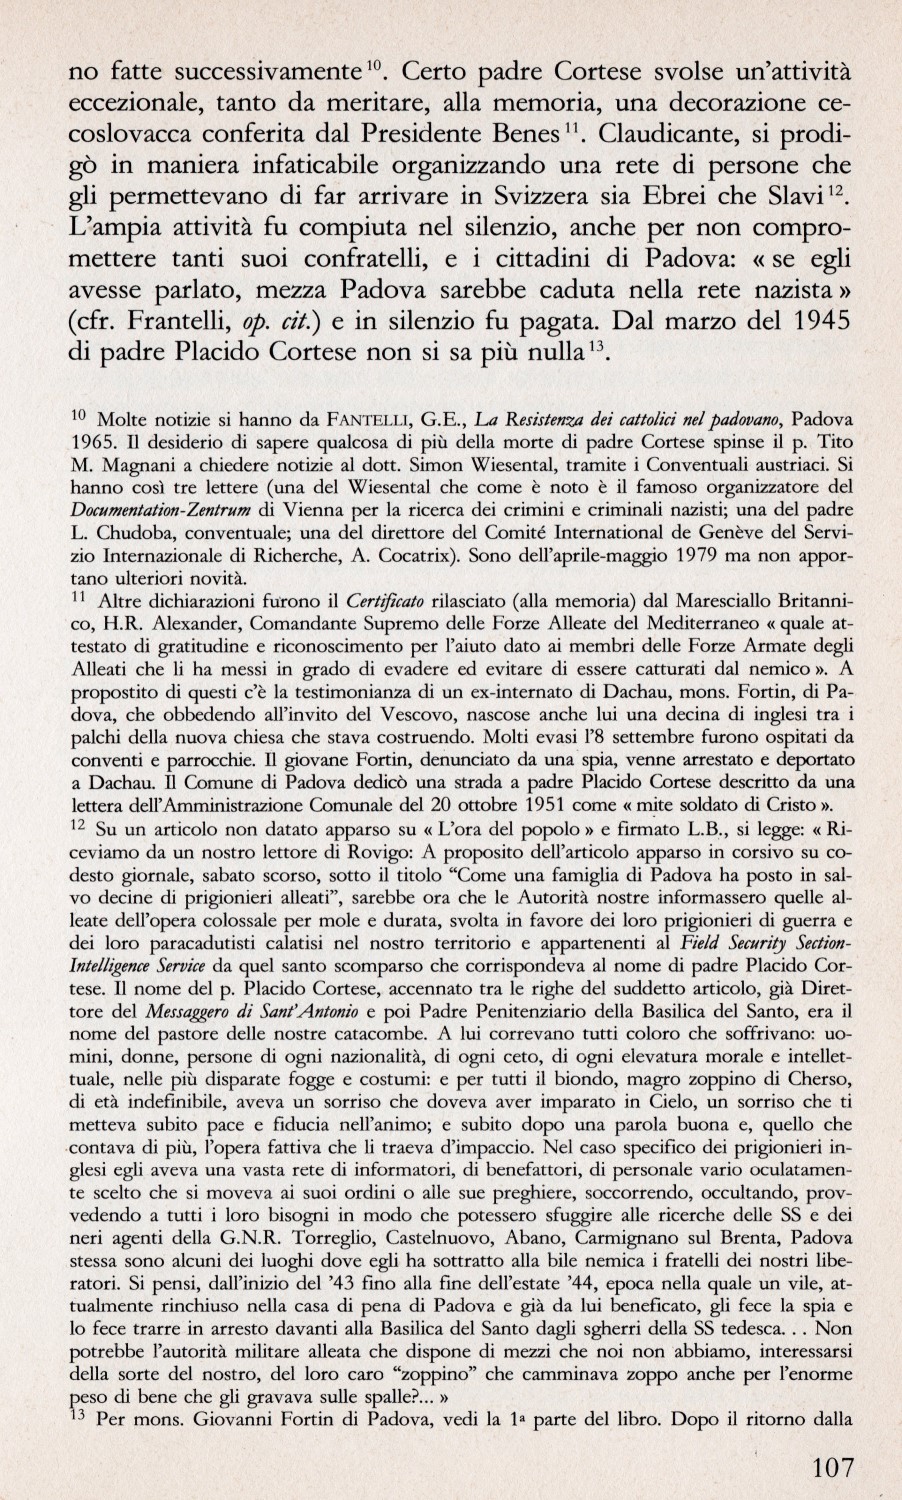 NACHT UND NEBEL (NOTTE E NEBBIA), UOMINI DA NON DIMENTICARE 1943-1945, 
di Albina Cauvin e Giacomo Grasso - CASA EDITRICE MARIETTI, TORINO 1981